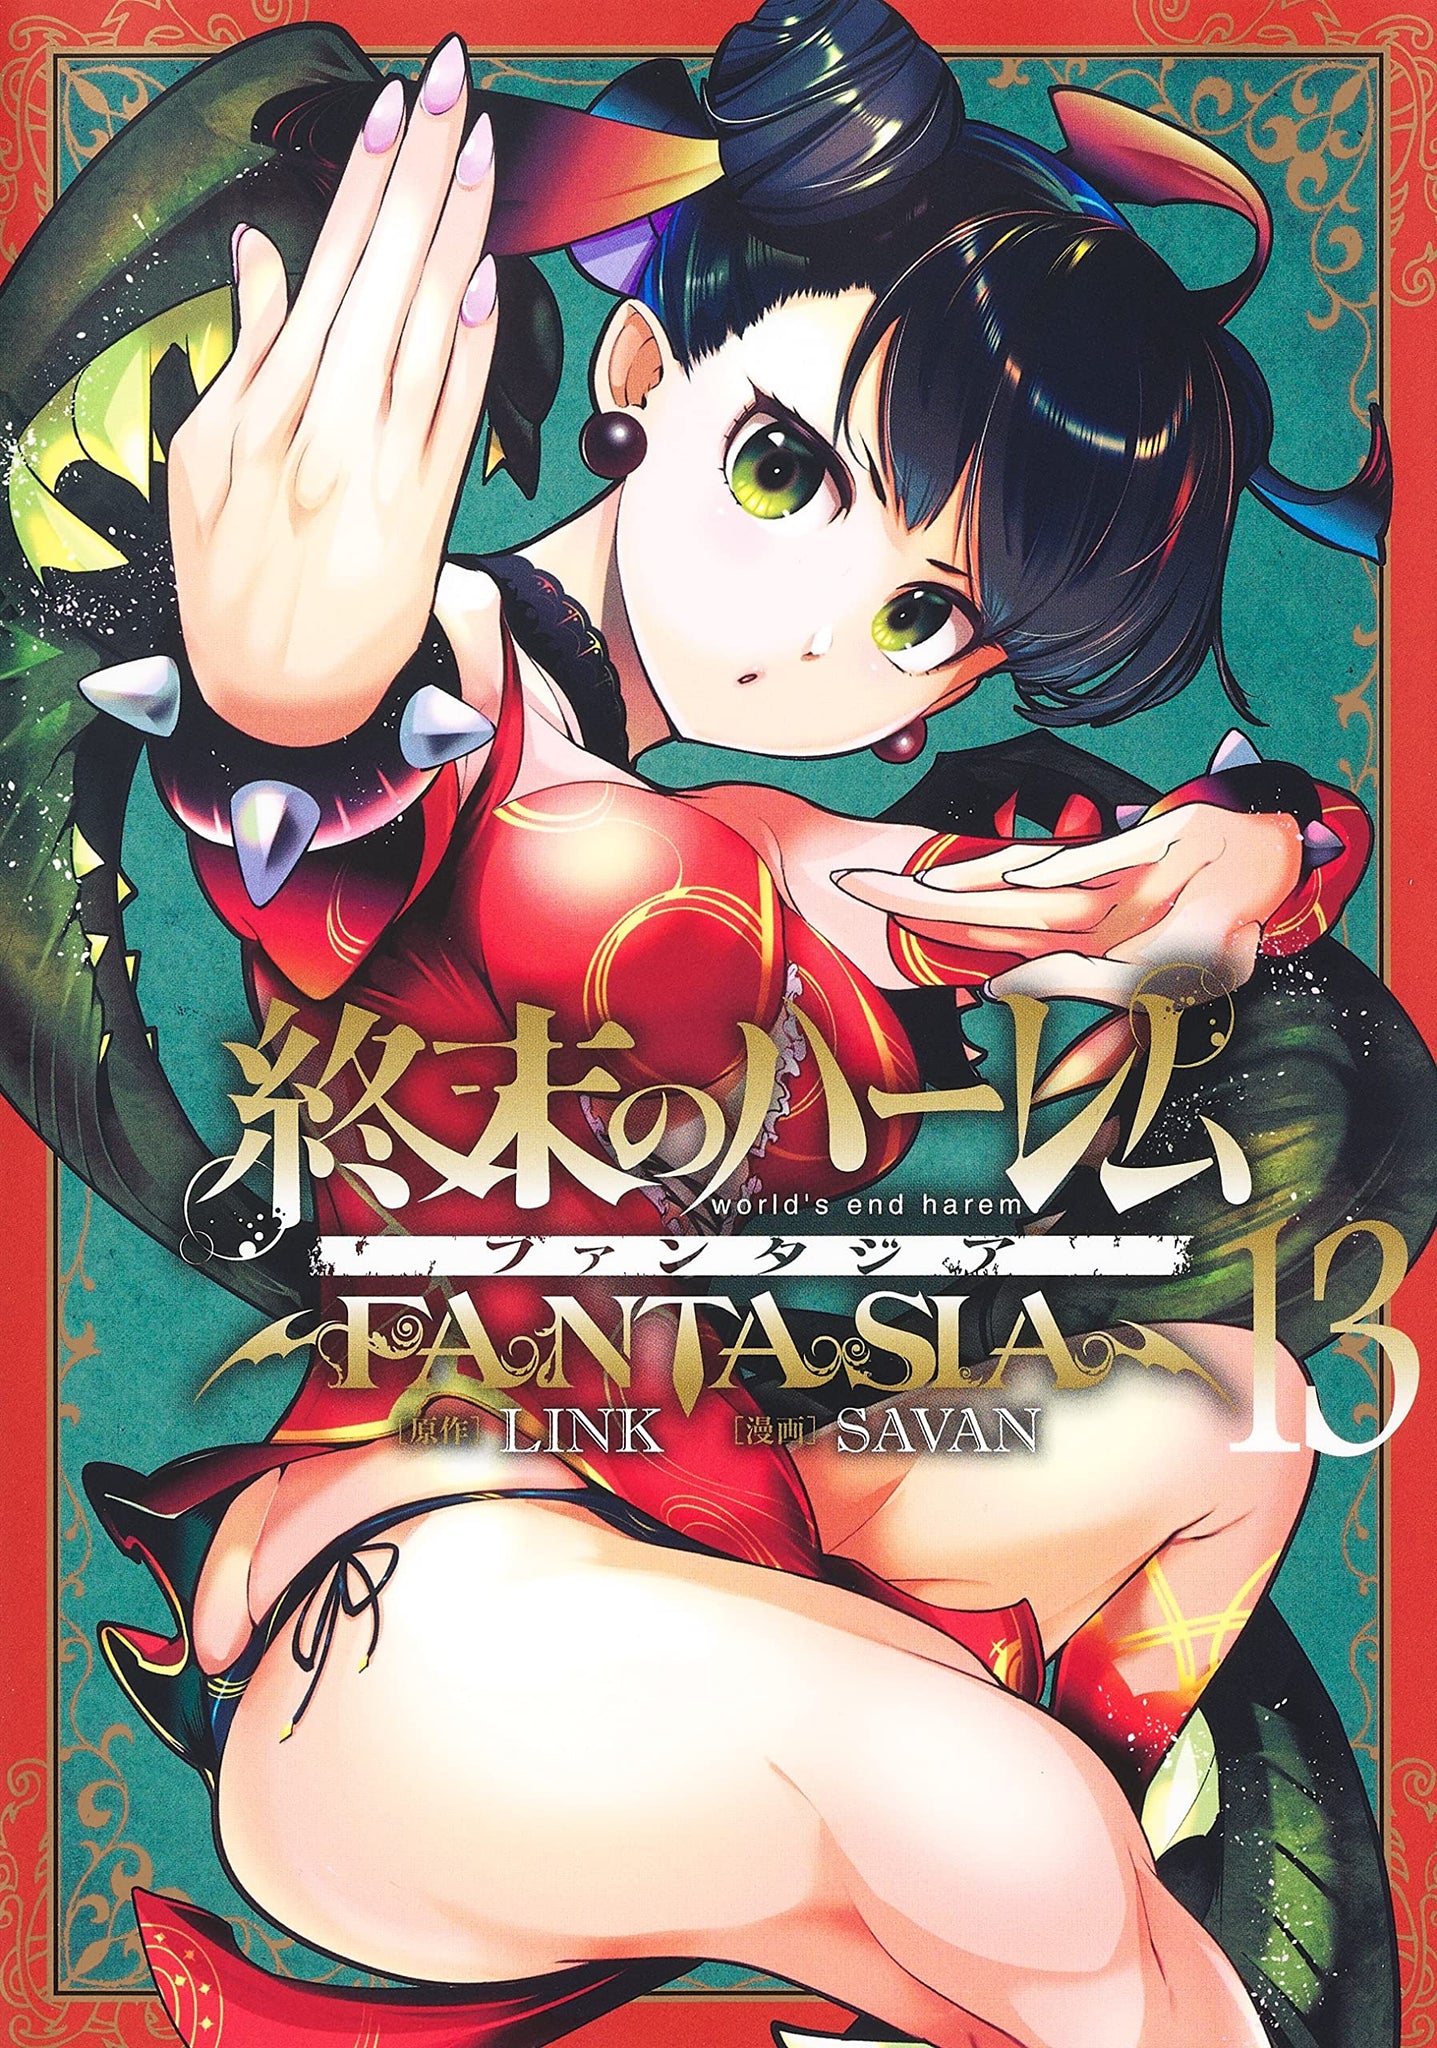 World's End Harem: Fantasia Vol. 4 by Link: 9781947804852 |  : Books